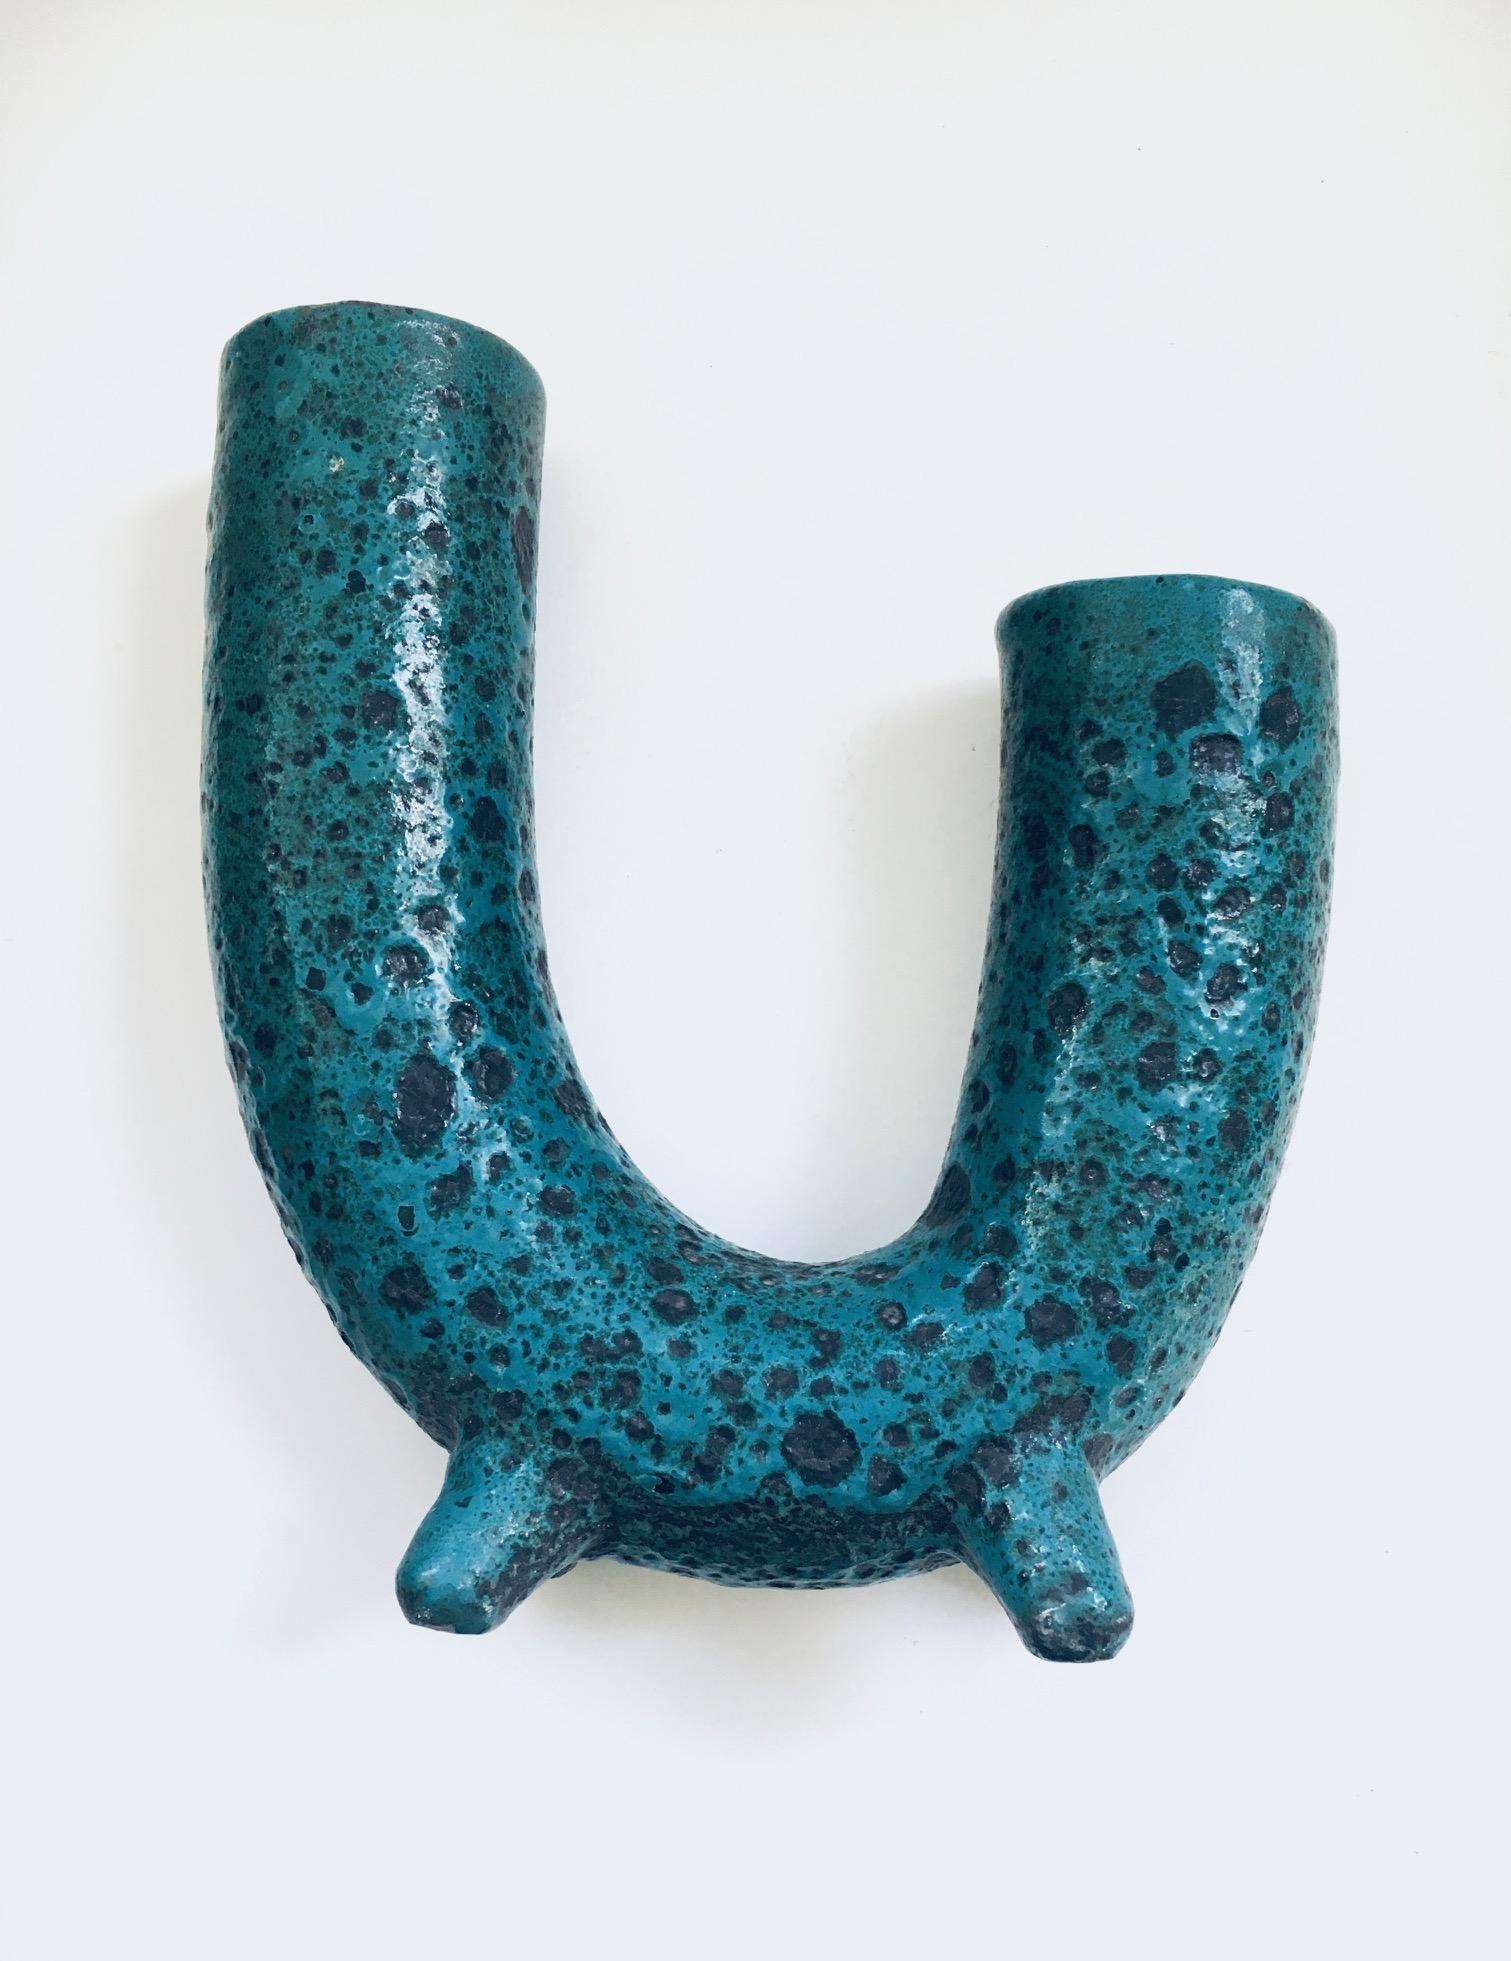 Brutalist Art Pottery Studio Fat Lava Horn Spout Vase, Belgium 1960's For Sale 5